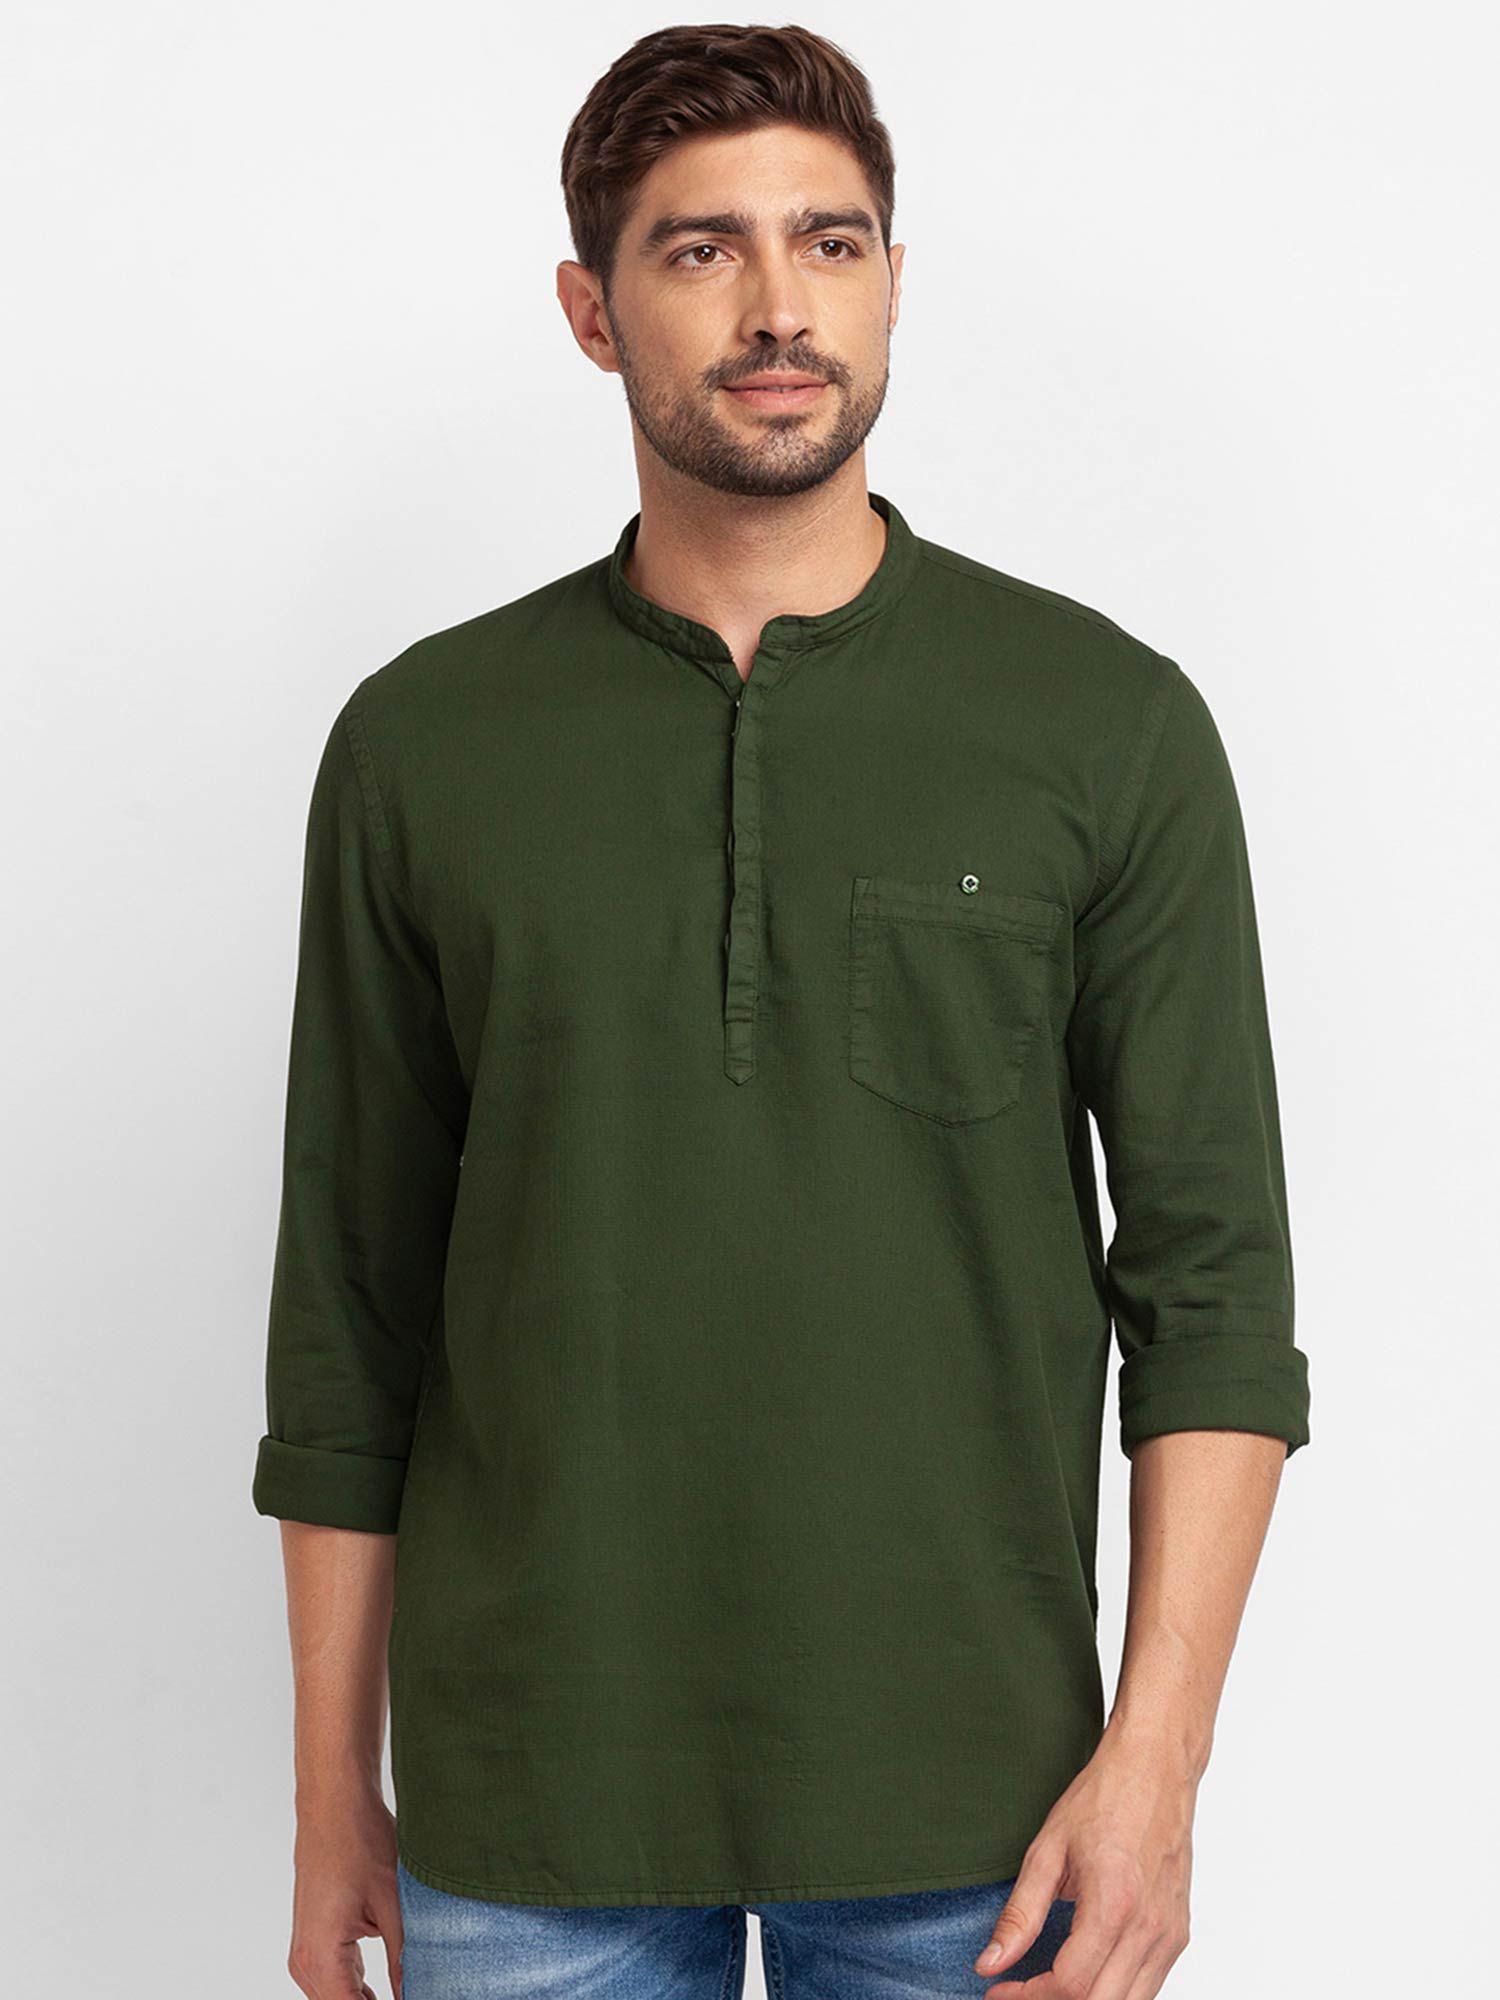 olive green cotton full sleeve plain shirt for men